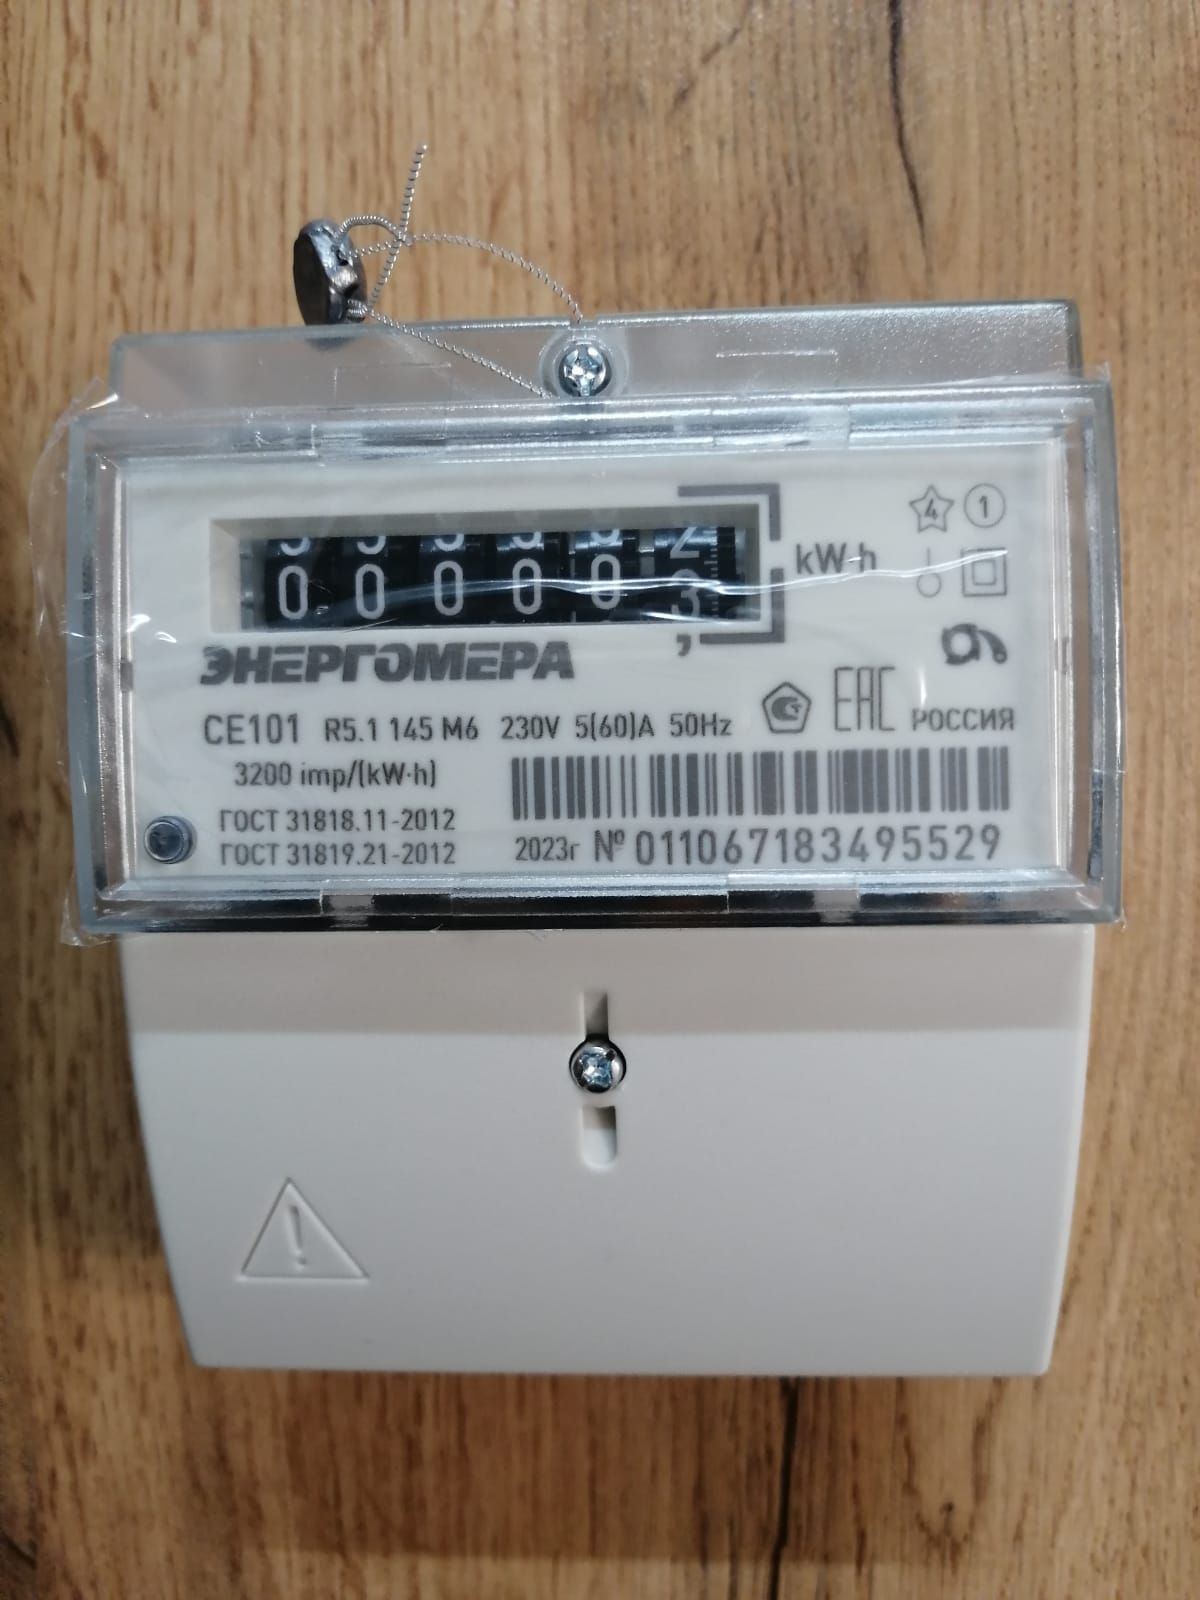 Установка и подключение однофазного однотарифного счетчика электроэнергии СЕ101 R5 — Энергомера